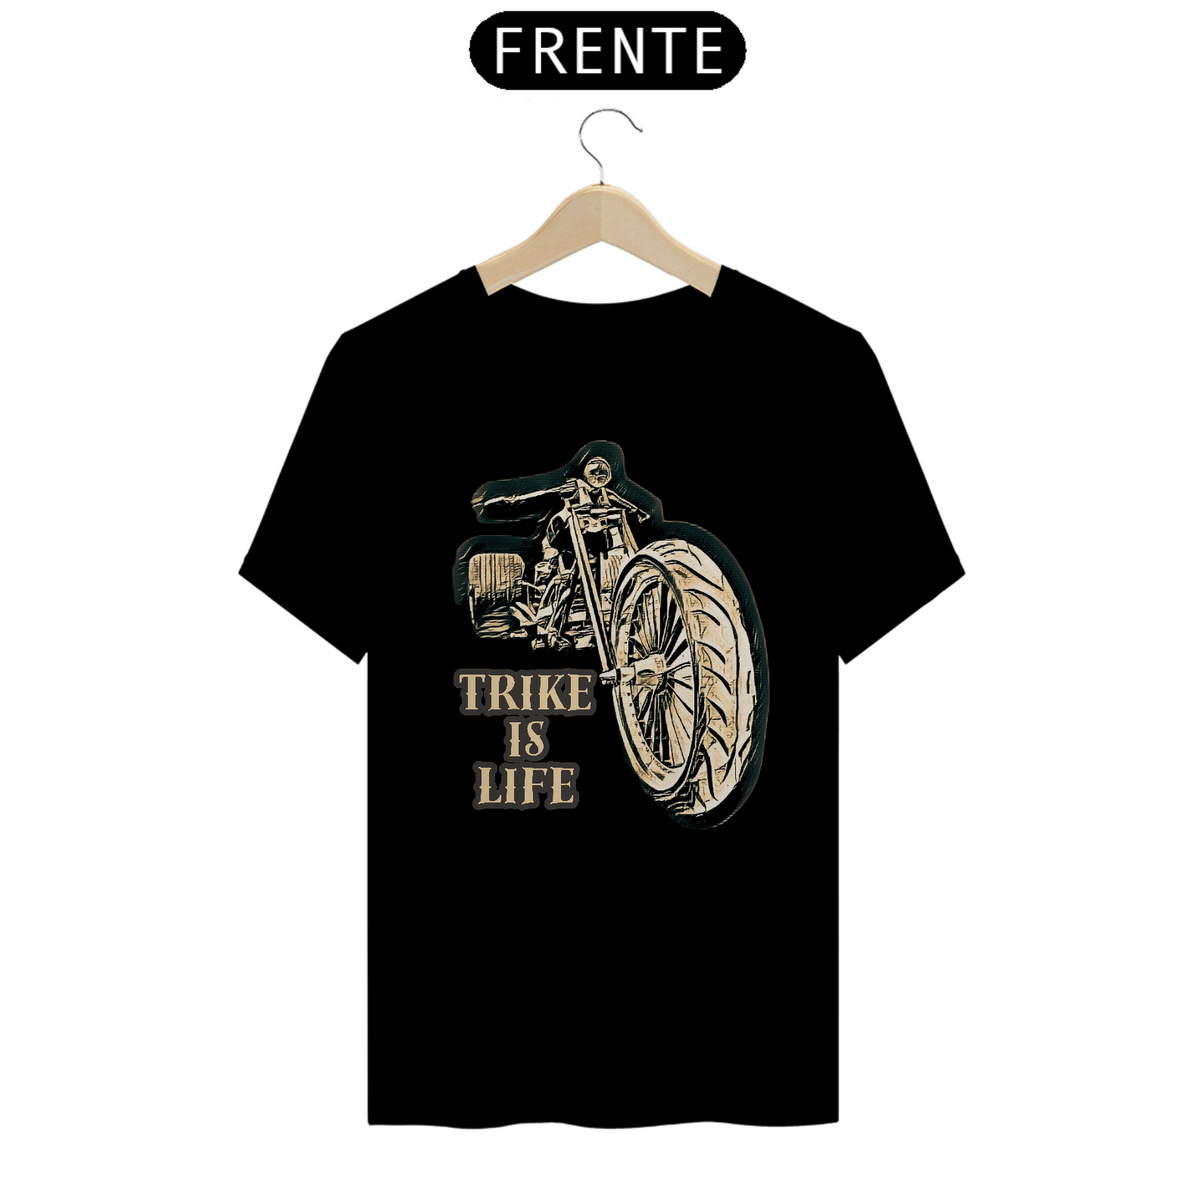 Nome do produto: T-Shirt Trike - Life